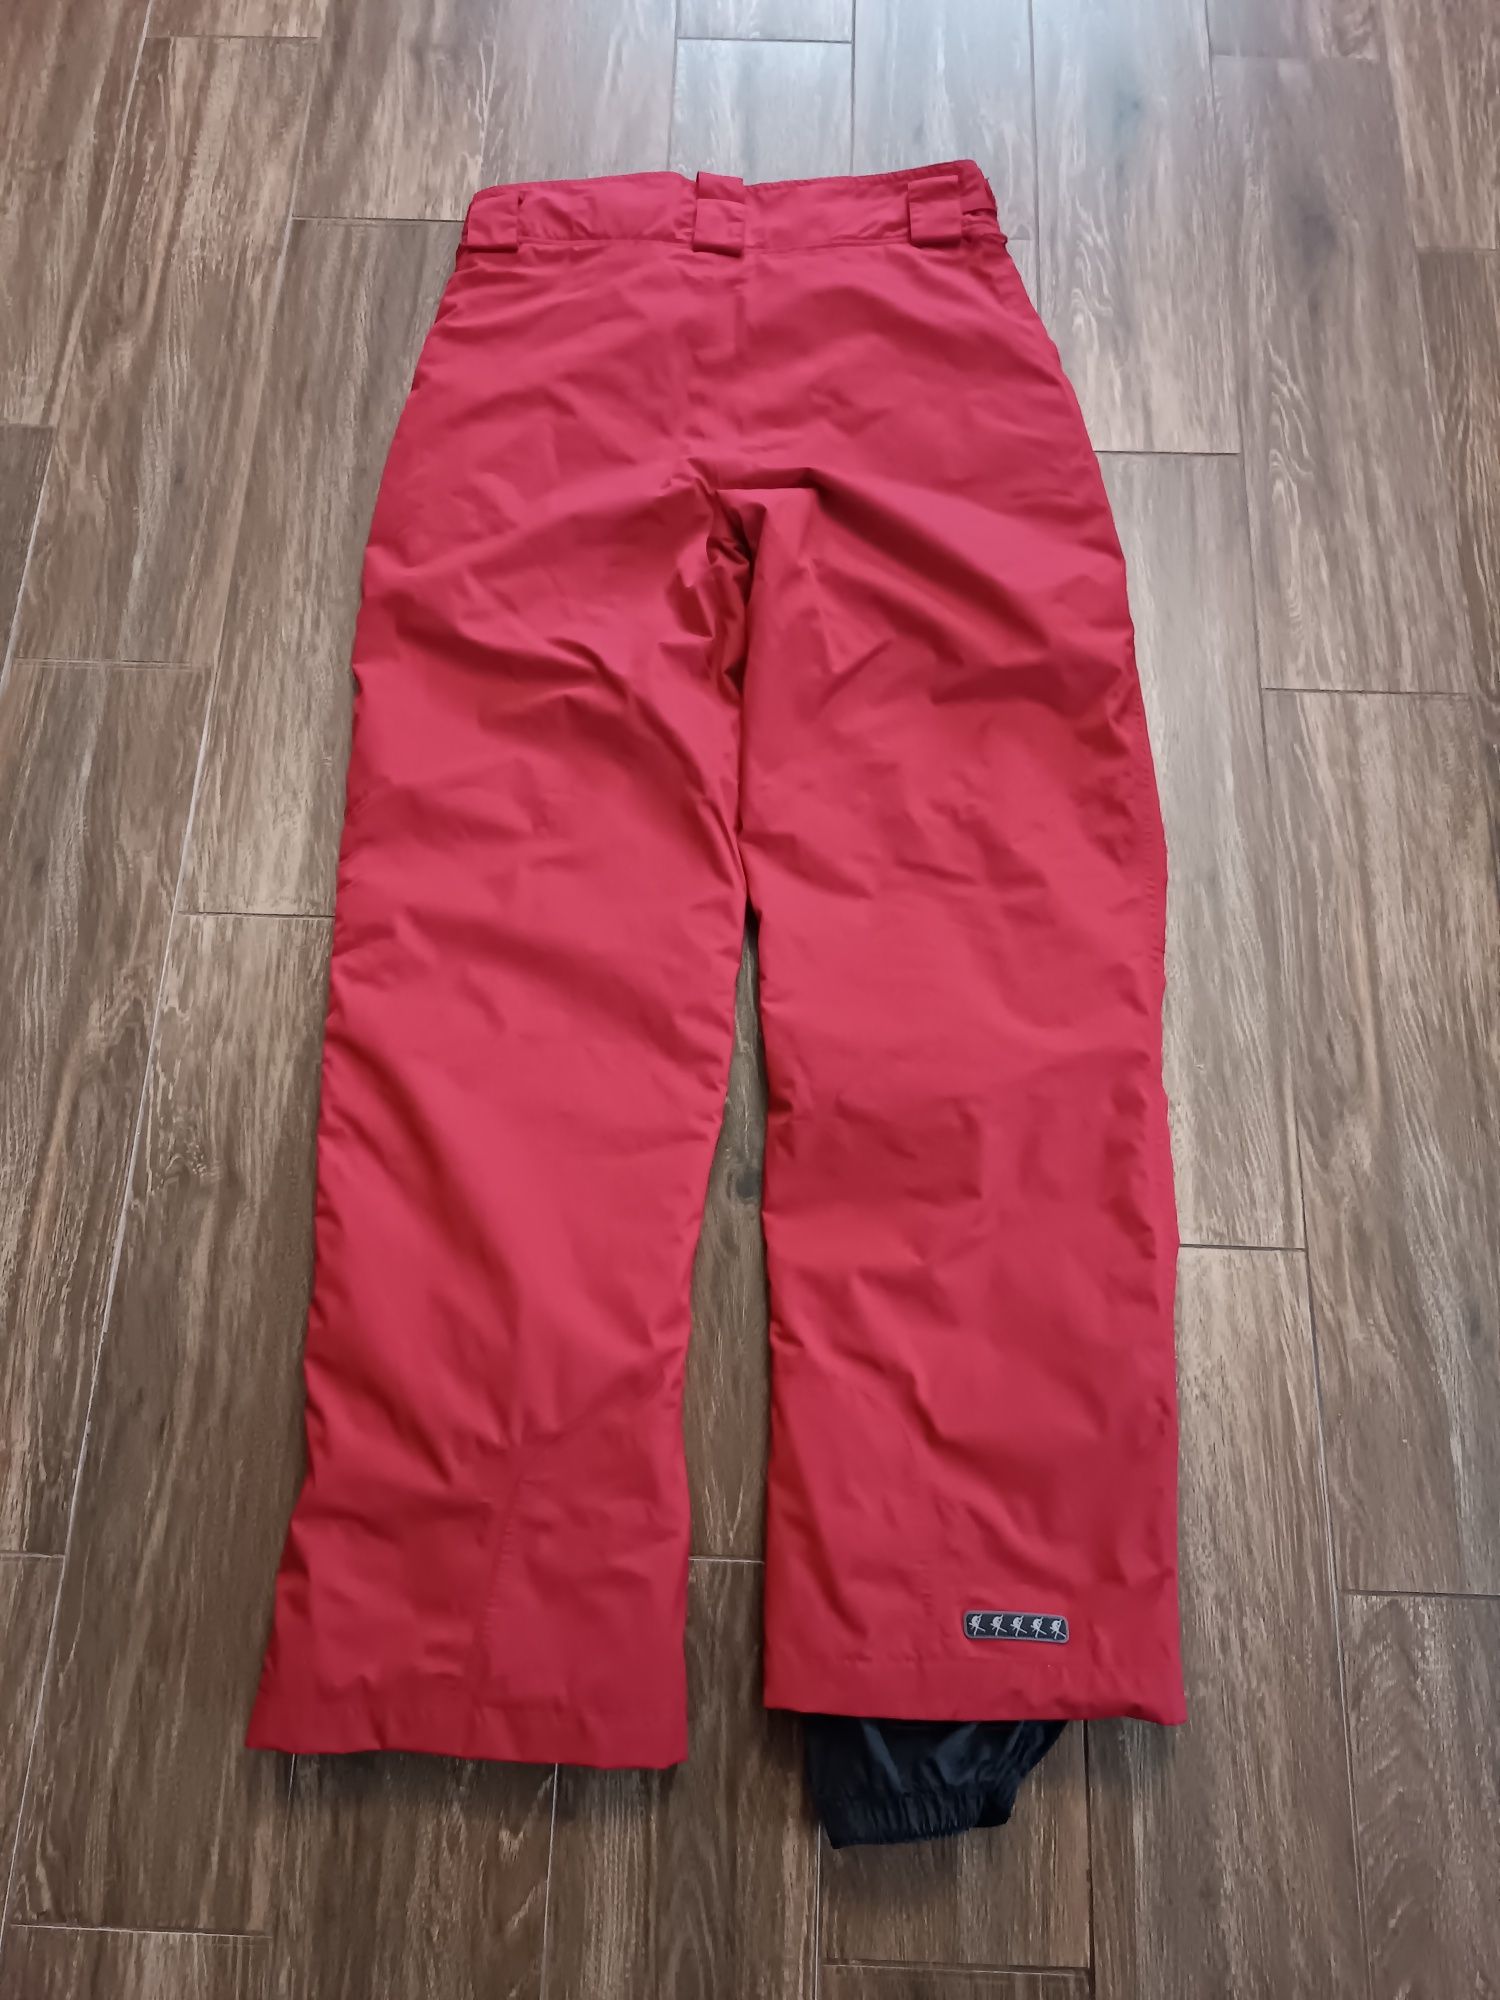 Sun valley L spodnie narciarskie Gore tex czerwone